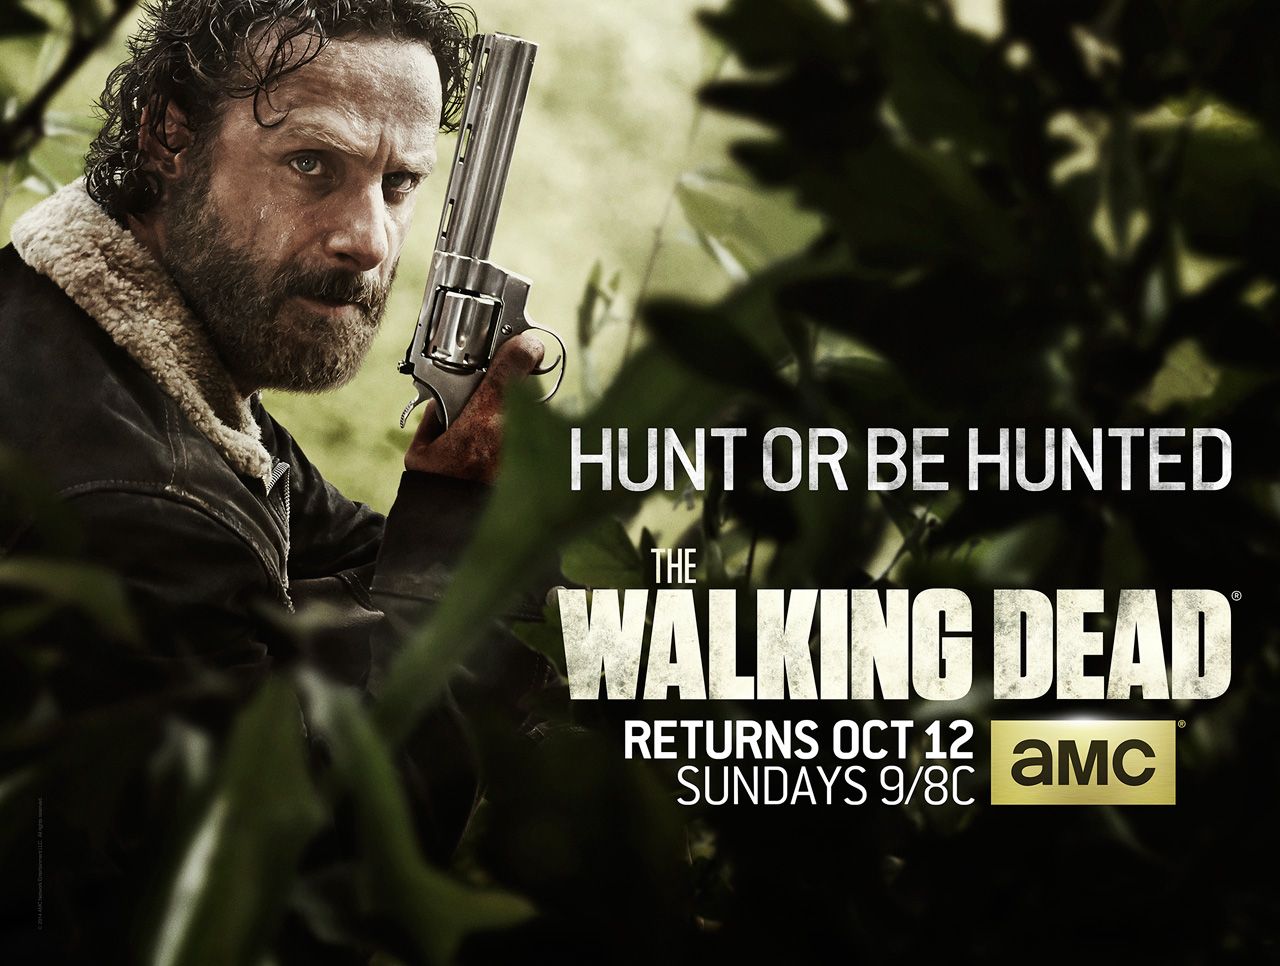 The Walking Dead Season 5 Poster